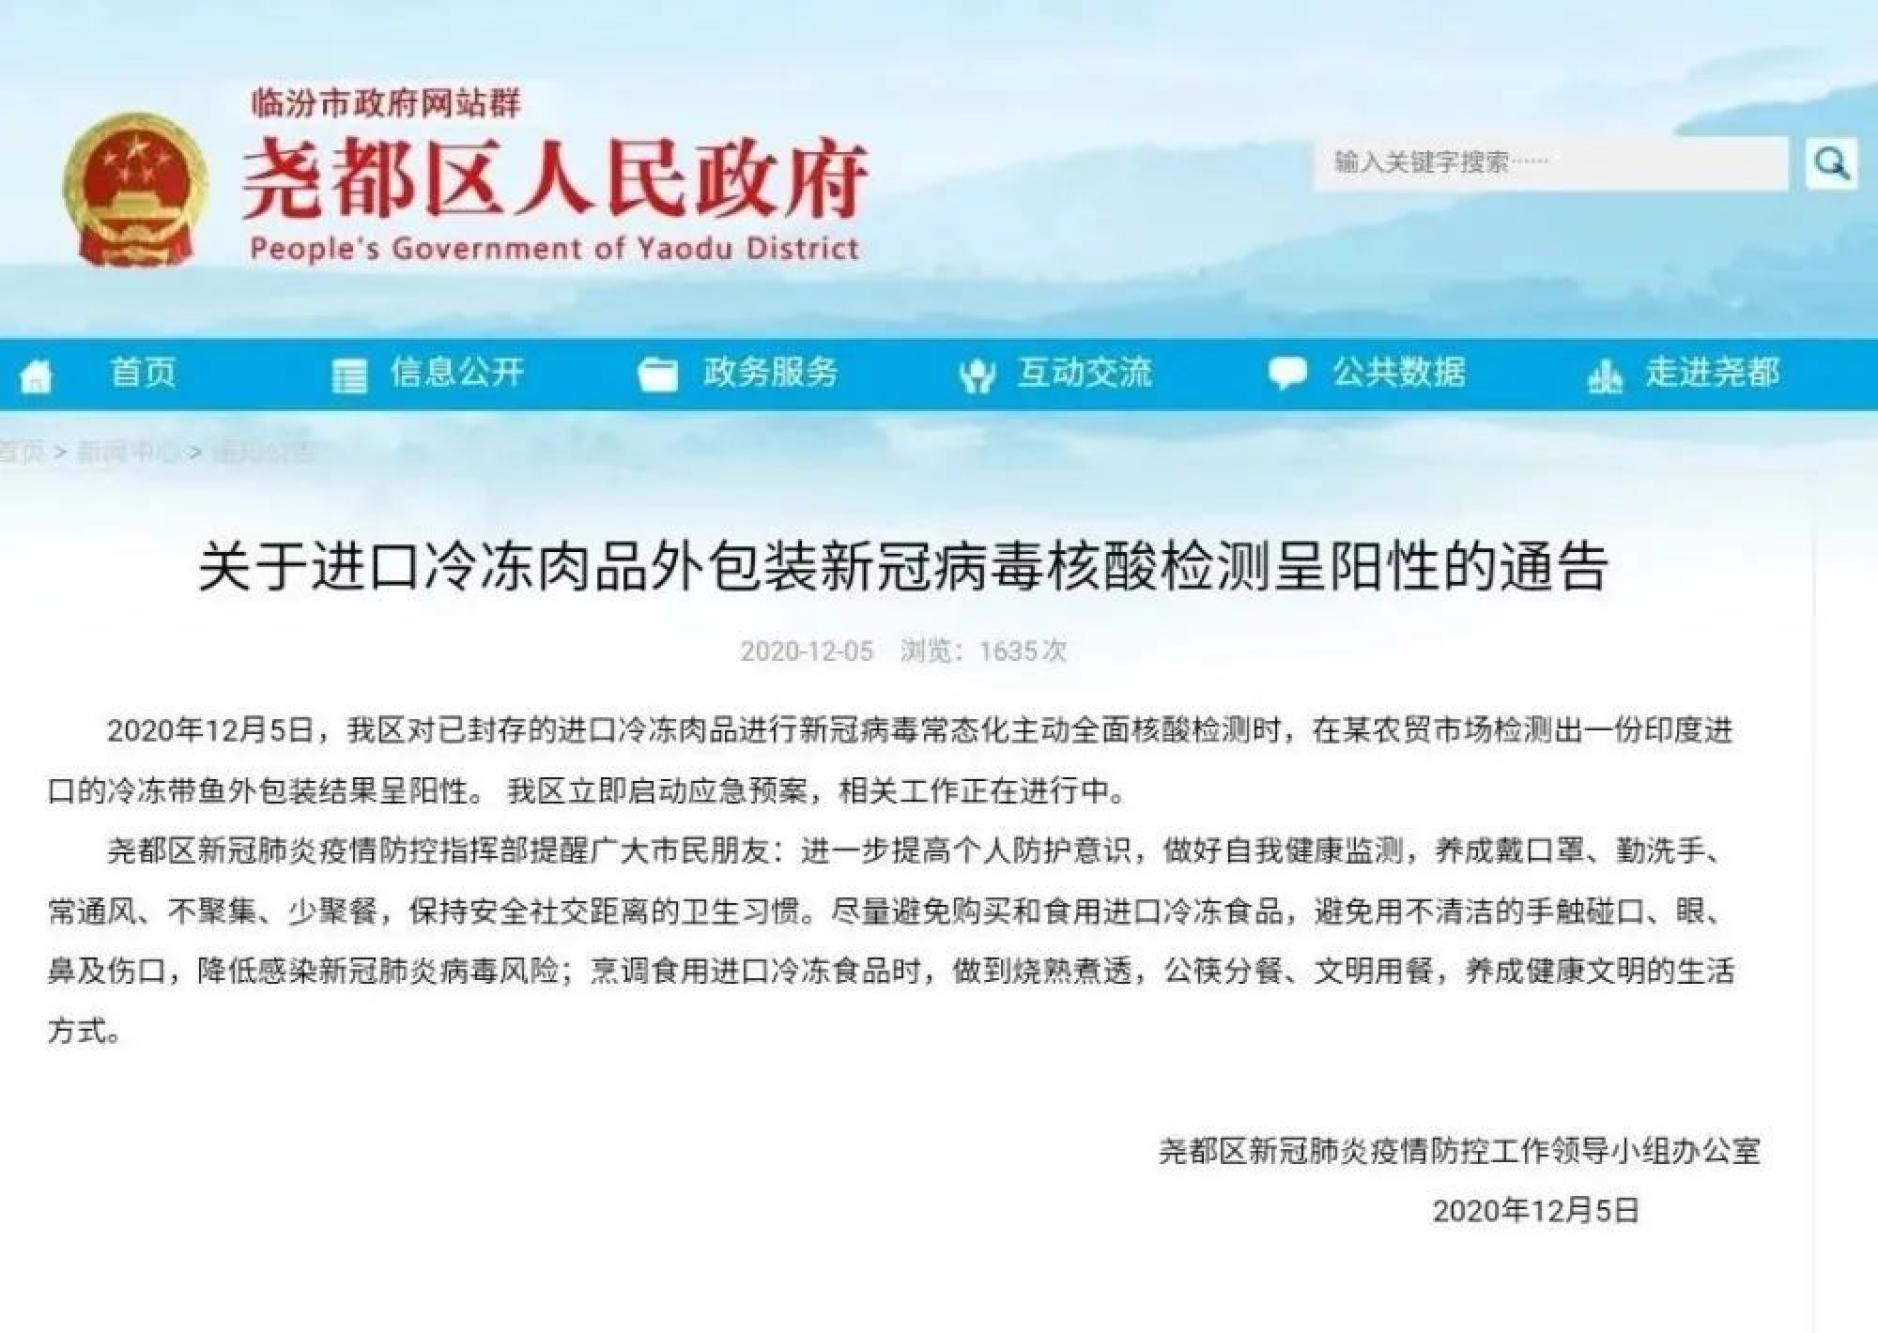 12月5日,山西省临汾市尧都区新冠肺炎疫情防控工作领导小组办公室对外